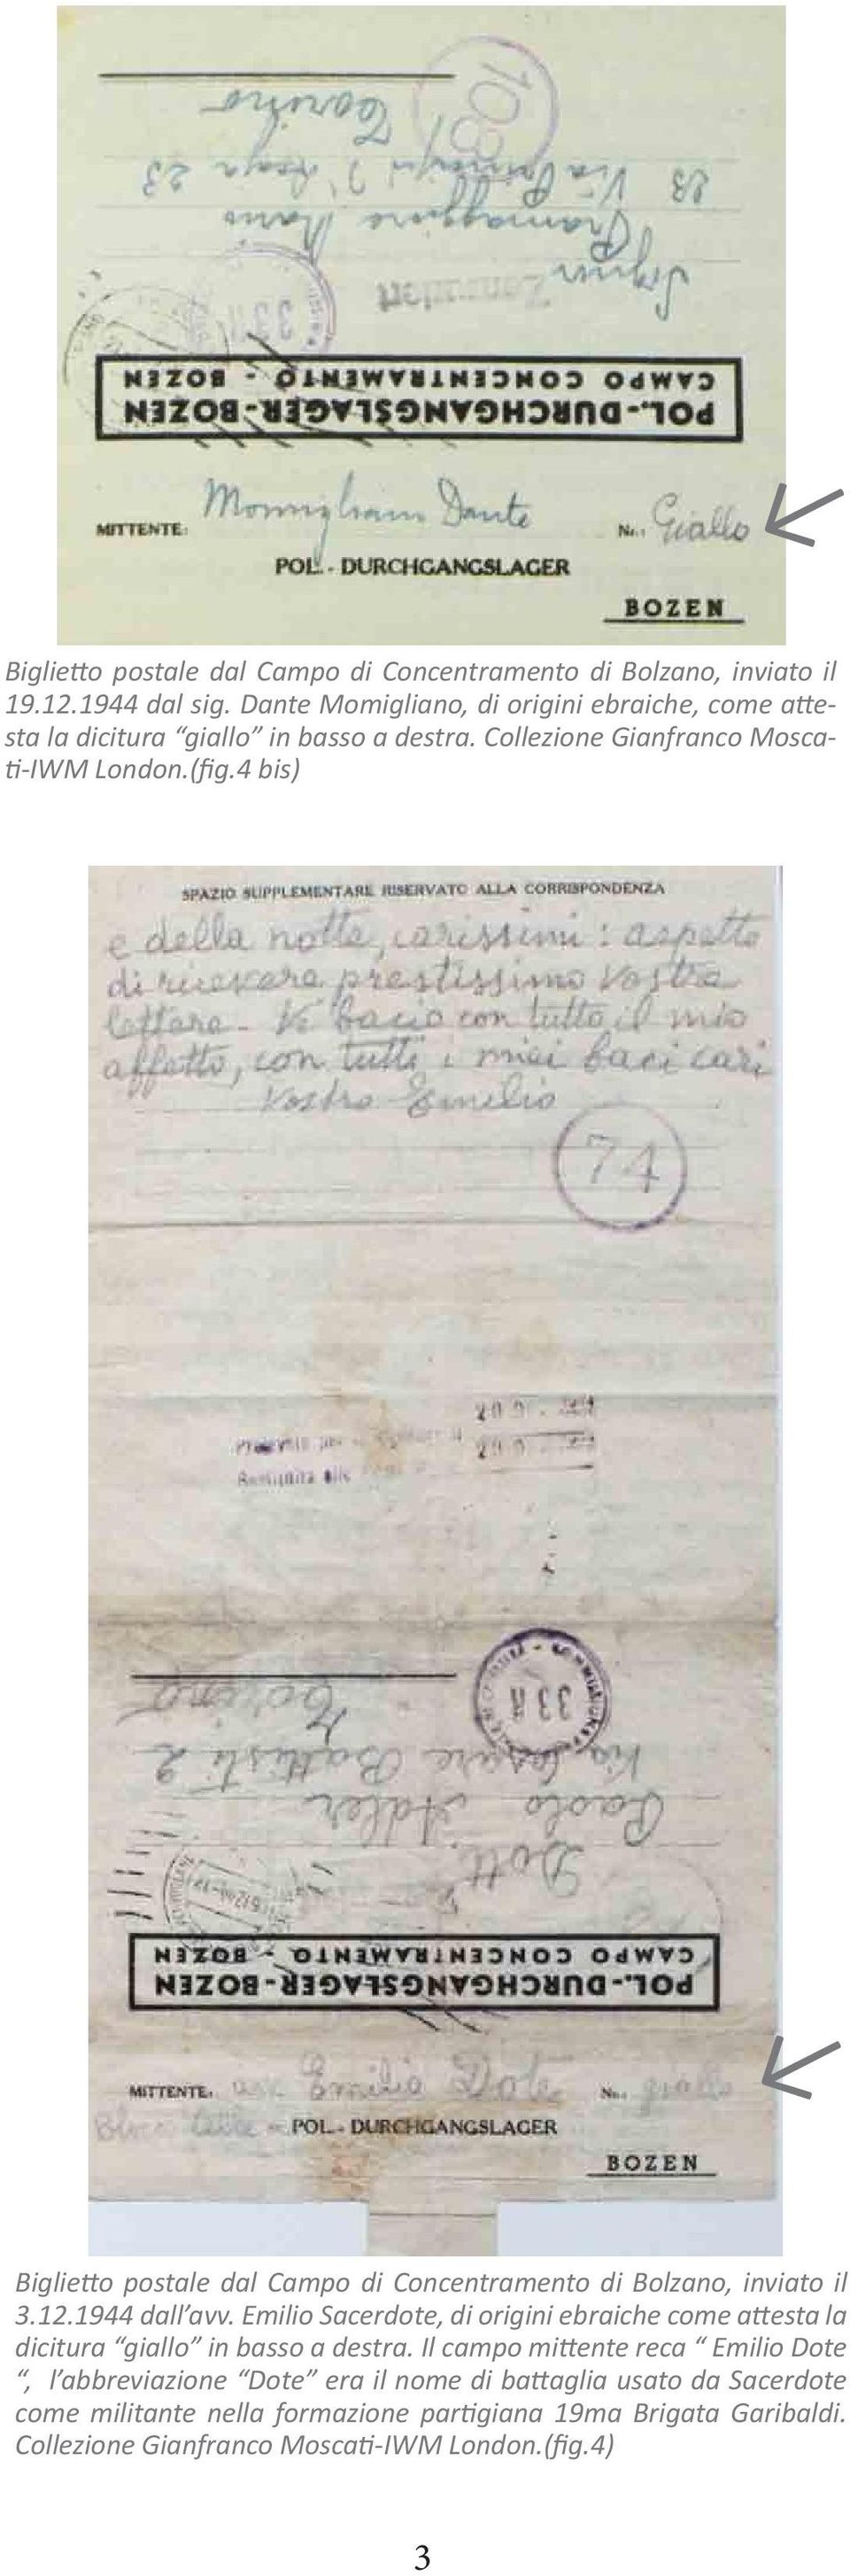 4 bis) Biglietto postale dal Campo di Concentramento di Bolzano, inviato il 3.12.1944 dall avv.